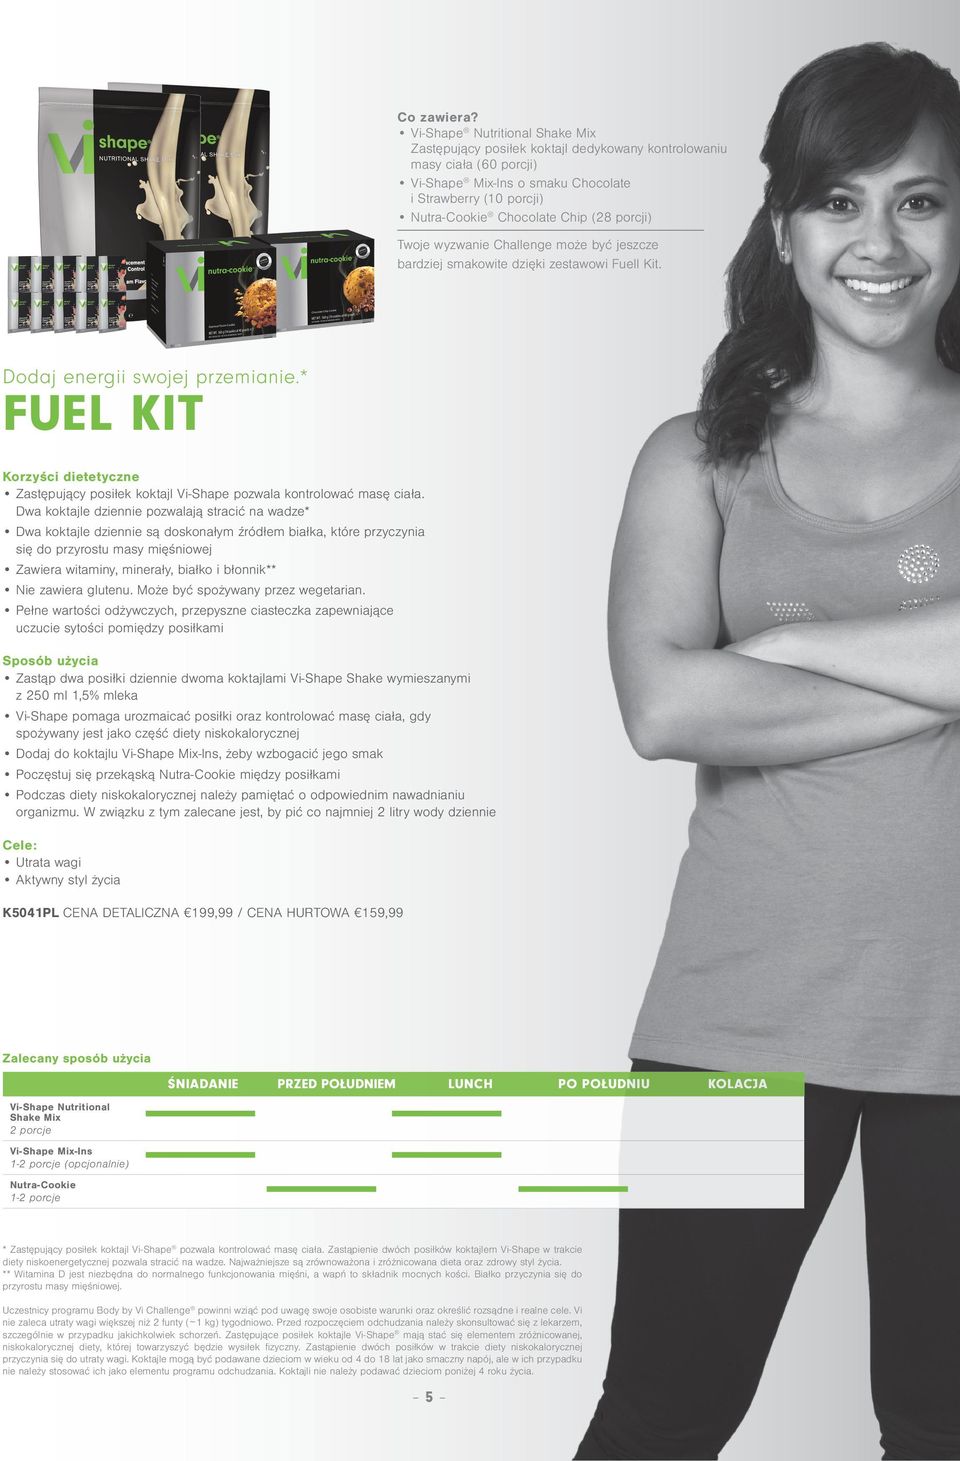 porcji) Twoje wyzwanie Challenge może być jeszcze bardziej smakowite dzięki zestawowi Fuell Kit. Dodaj energii swojej przemianie.